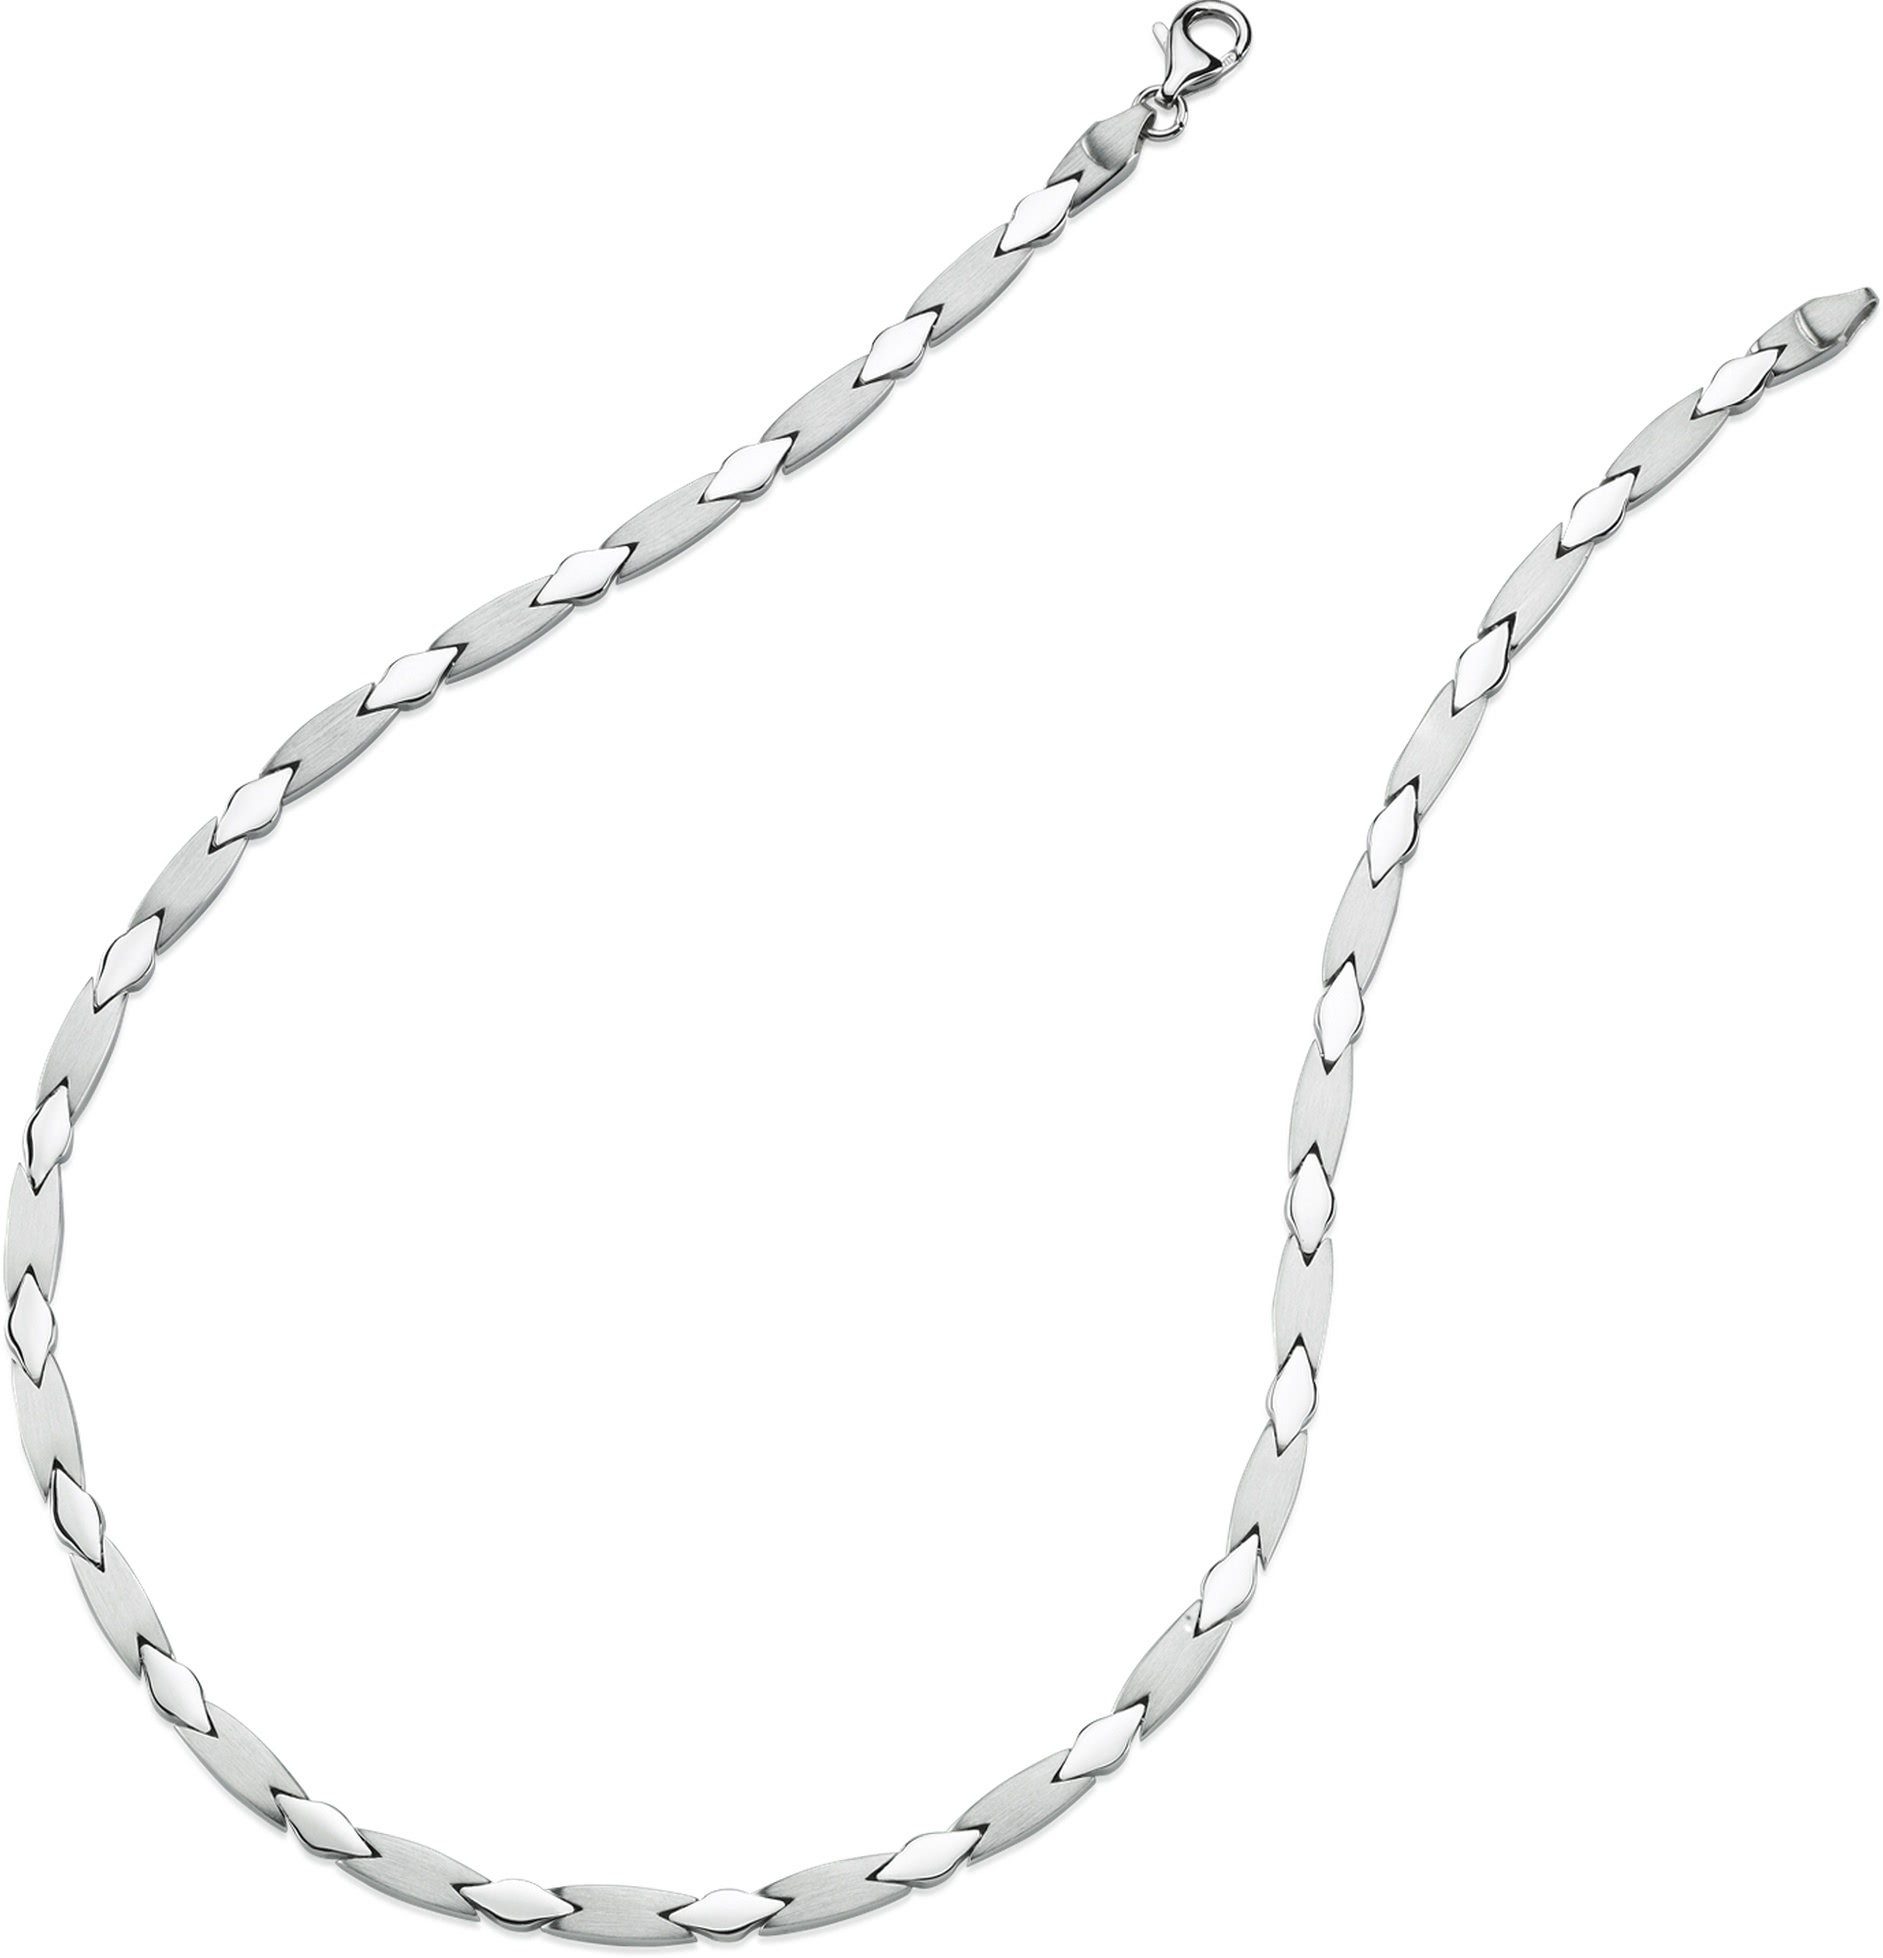 Silber, (Collier), Farbe: Silber Colliers, für Damen Balia Muster Collier Halsketten Damen 925 Sterling Balia silber Collier